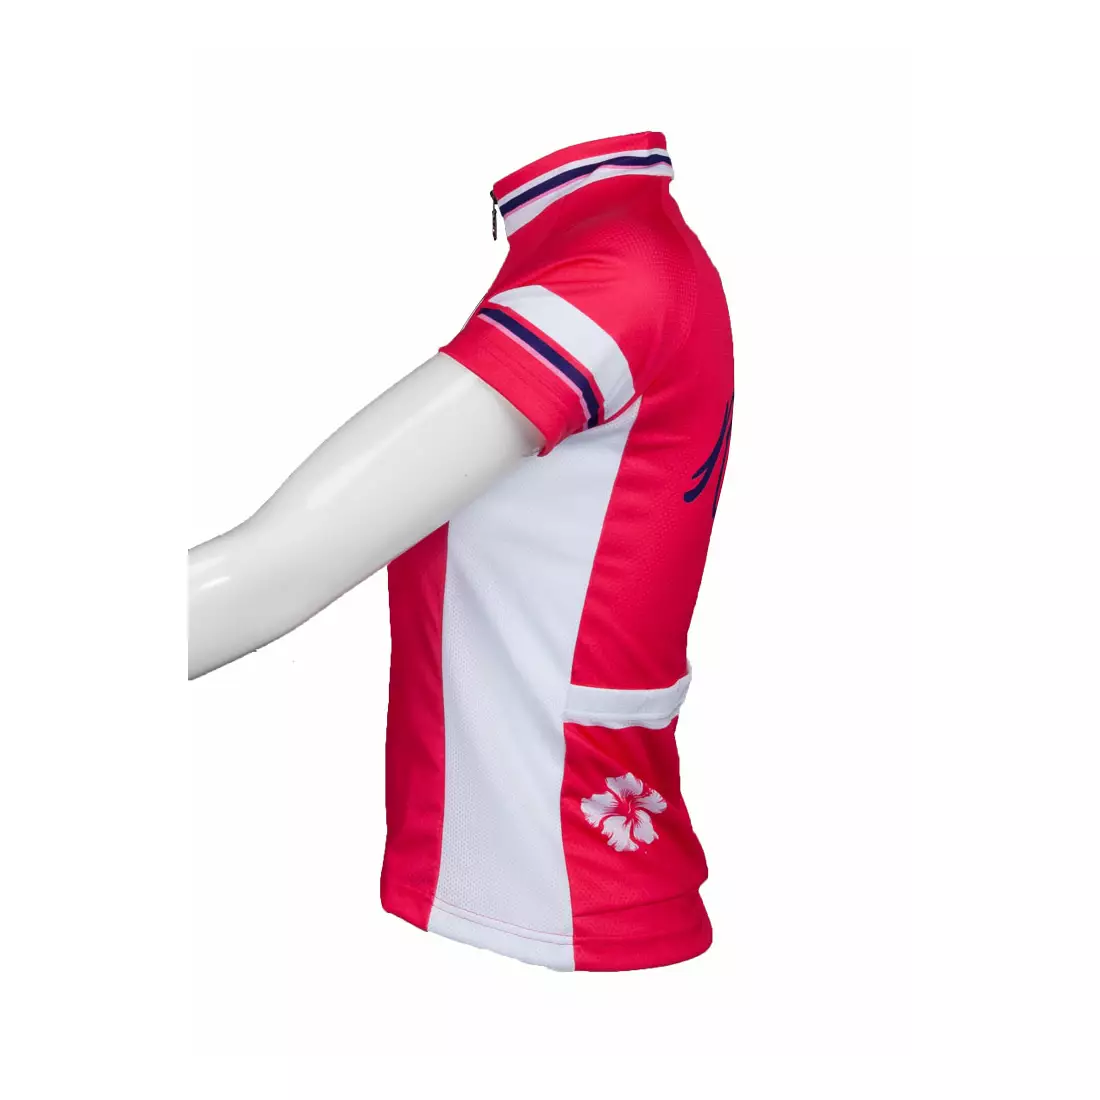 ROGELLI SABRINA - tricou de ciclism ultraușor pentru femei